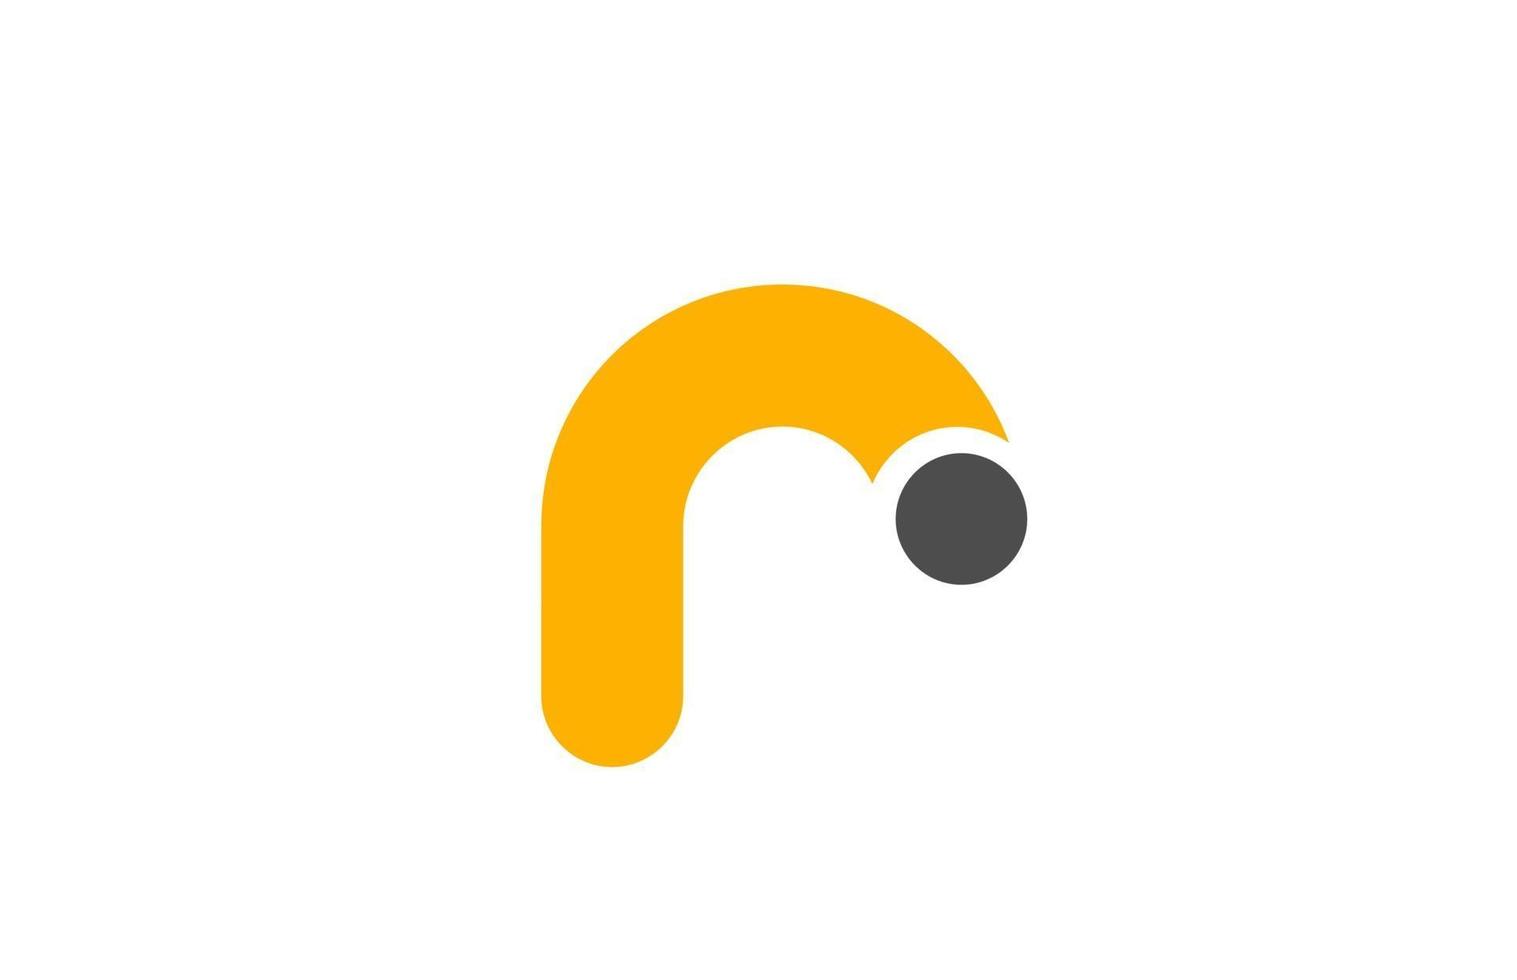 Buchstabe r Logo Alphabet Design Icon für Business gelb grau vektor